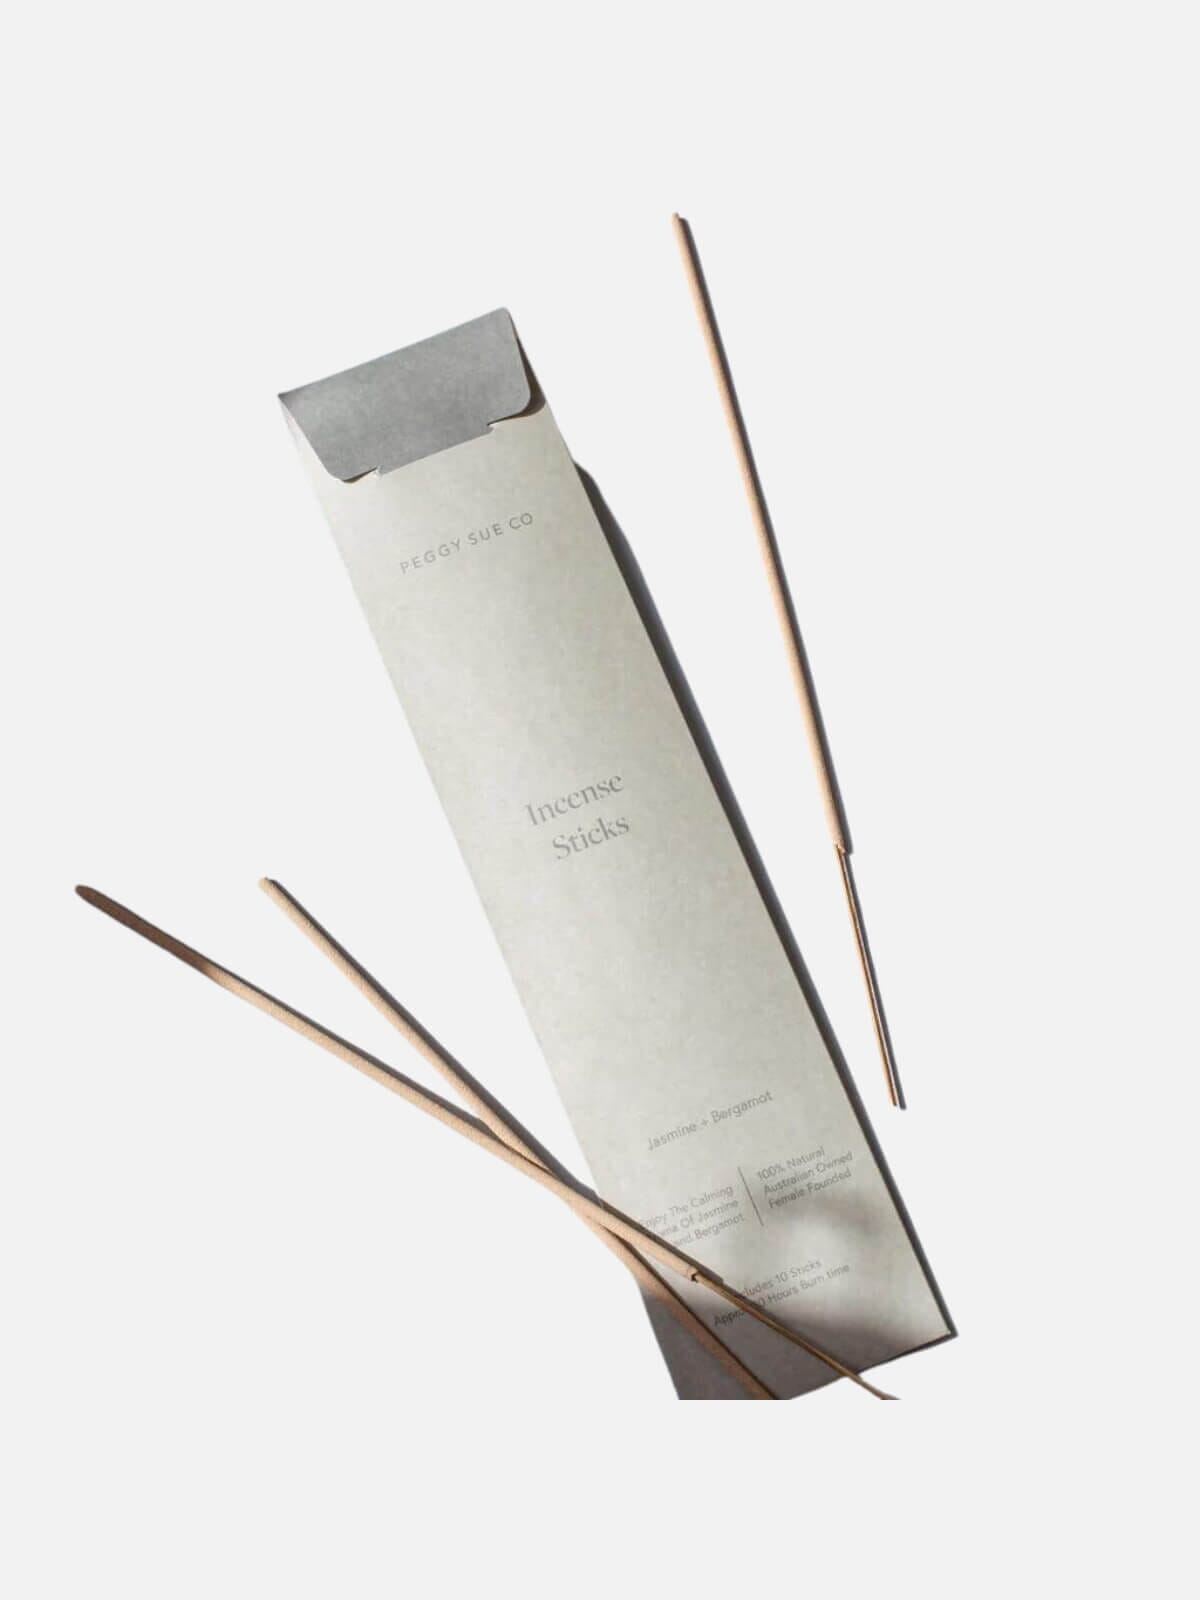 peggy-sue-co-incense-sticks-jasmine-bergamotPeggy Sue Co | Incense Sticks - Jasmine + Bergamot | Perlu